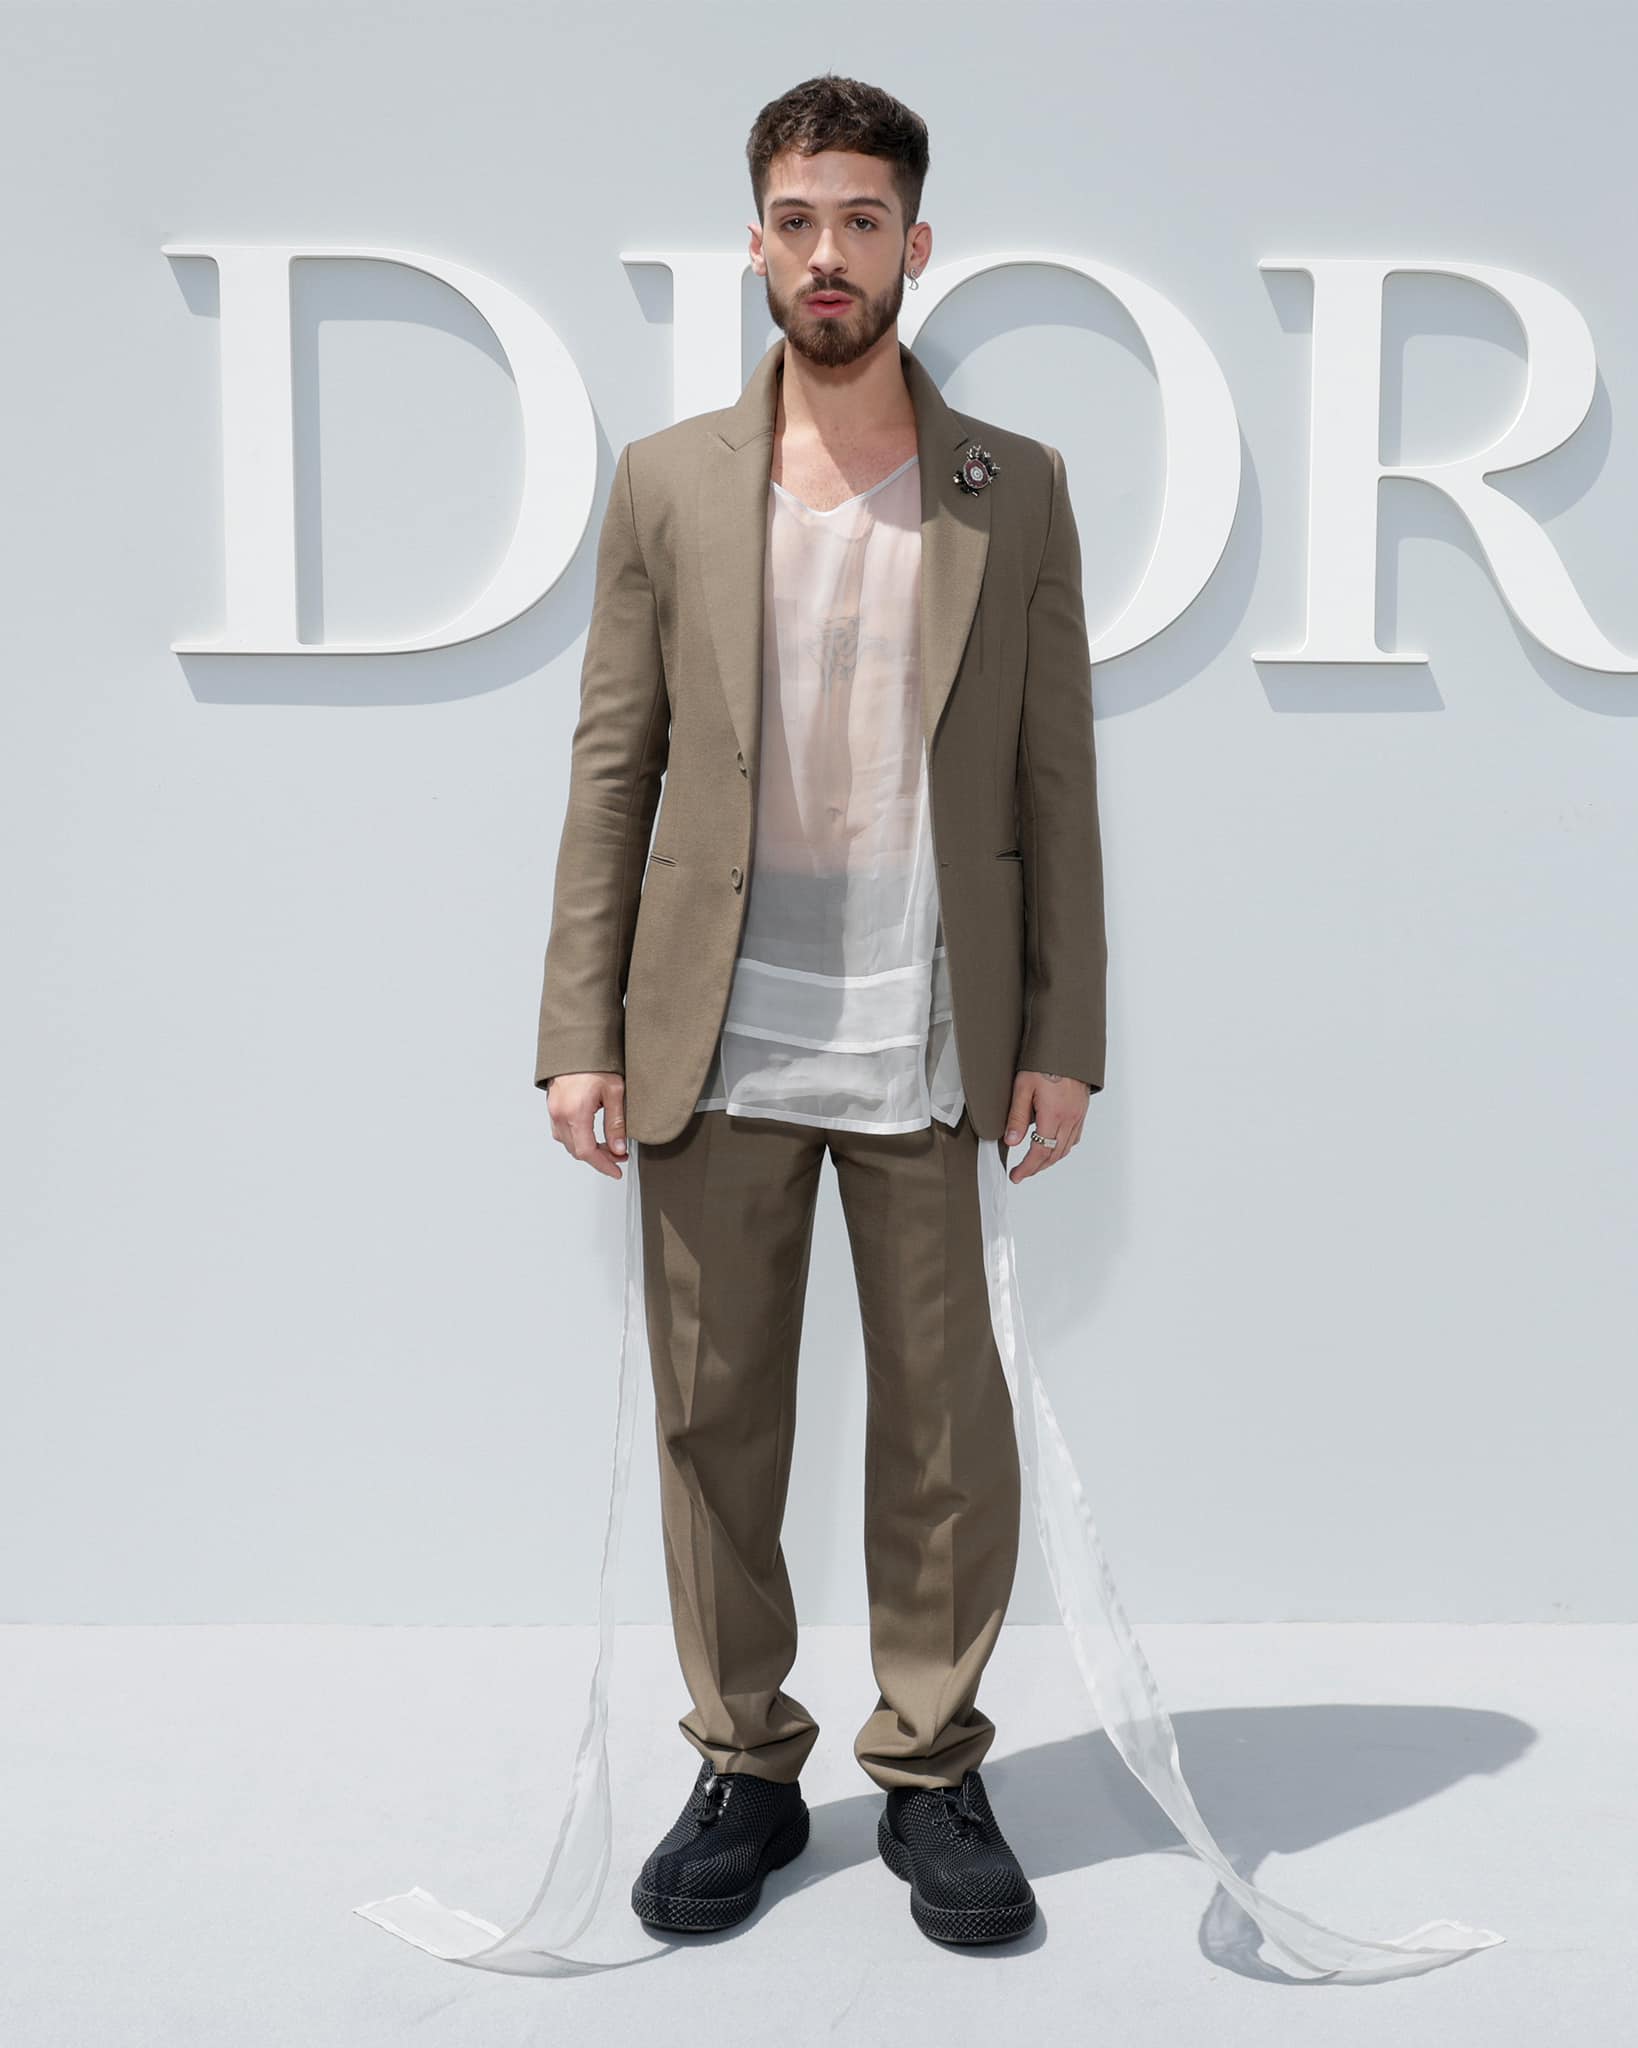 BST Dior Men Thu Đông 2022 Giải phóng hình thể phái mạnh từ những dấu ấn  kinh điển trong BST New Look  Tạp chí Đẹp